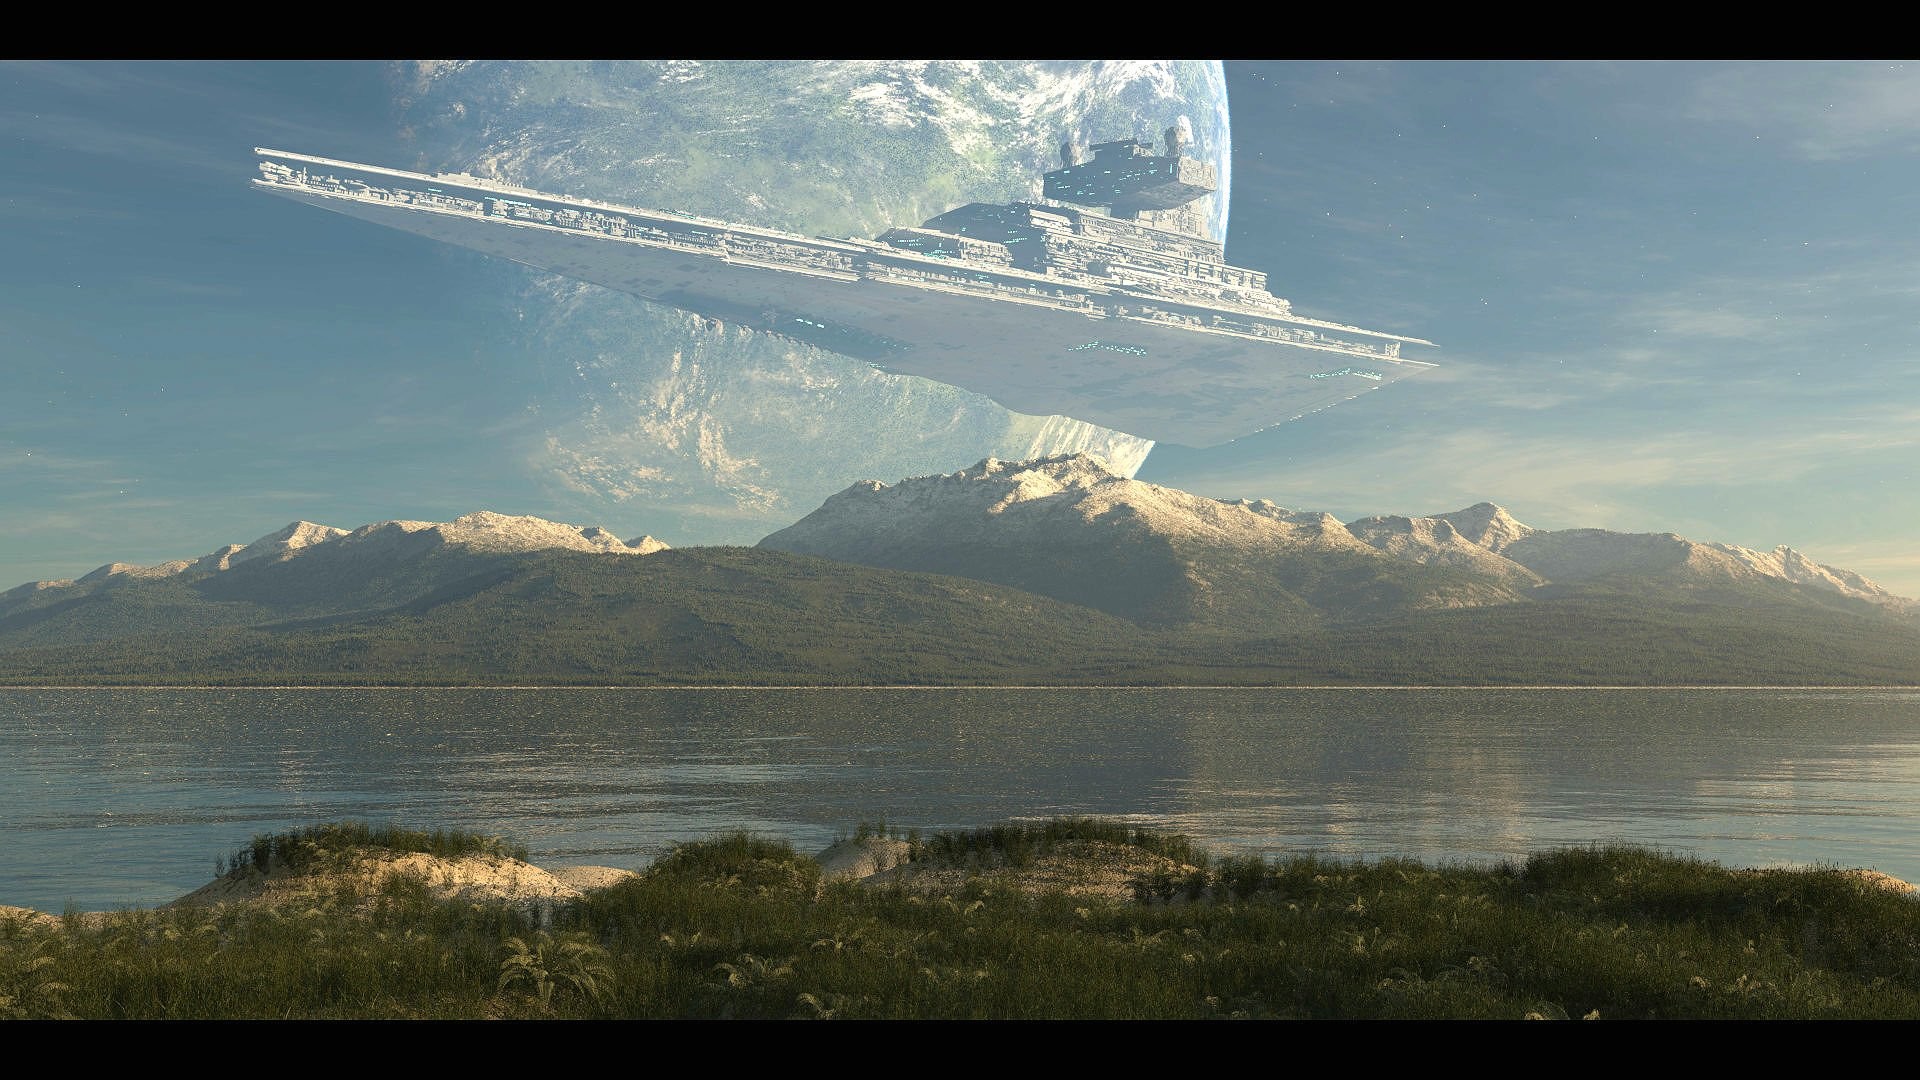 🔥 Free download Star Wars Landscape Wallpaper images [1920x1080] for